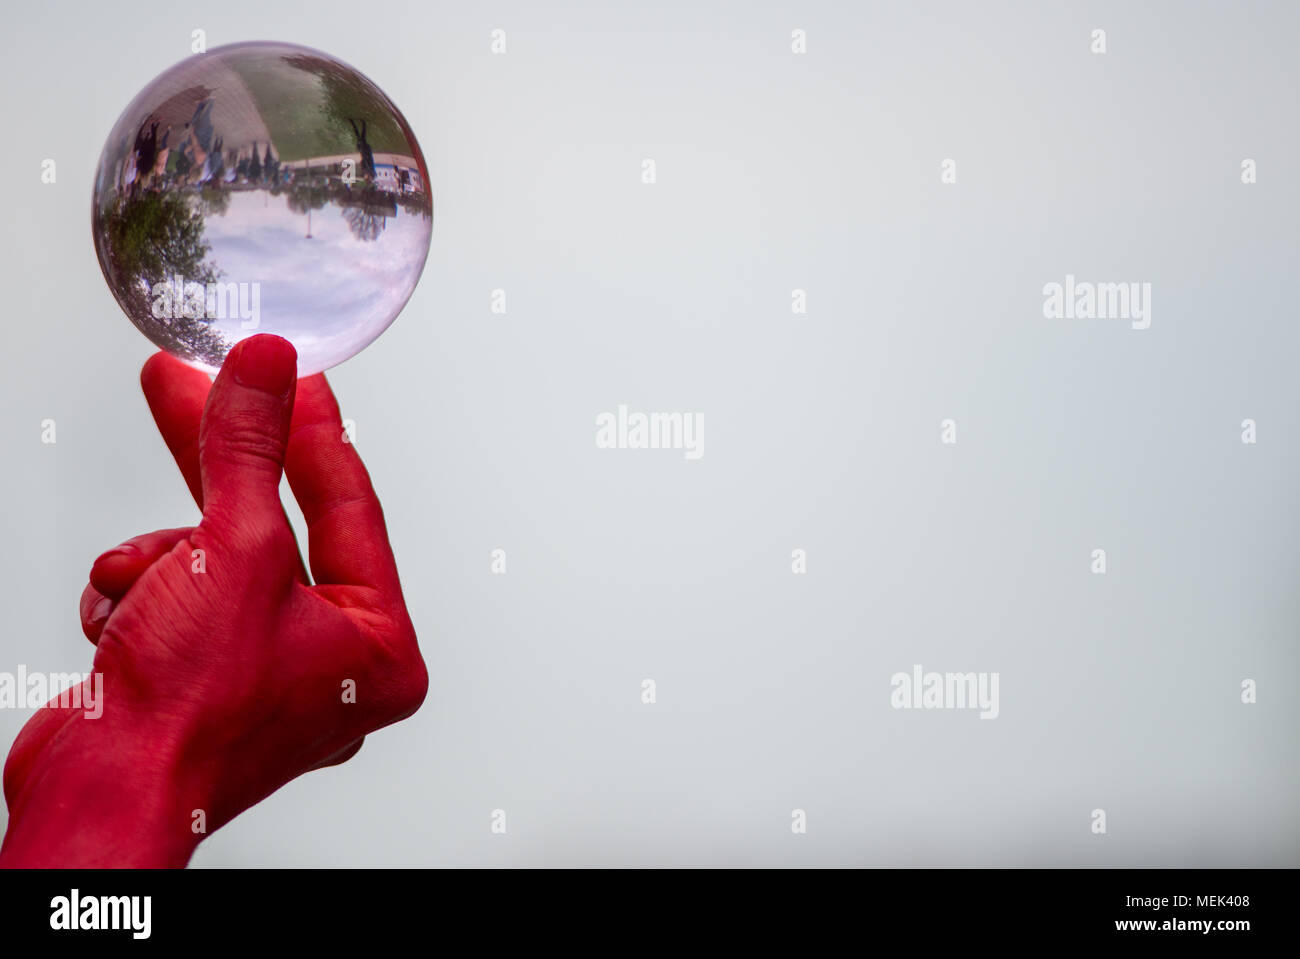 Homme avec les mains rouges habillé comme le diable est titulaire et joue avec une boule de cristal de verre isolé contenant des réflexions de personnes Banque D'Images